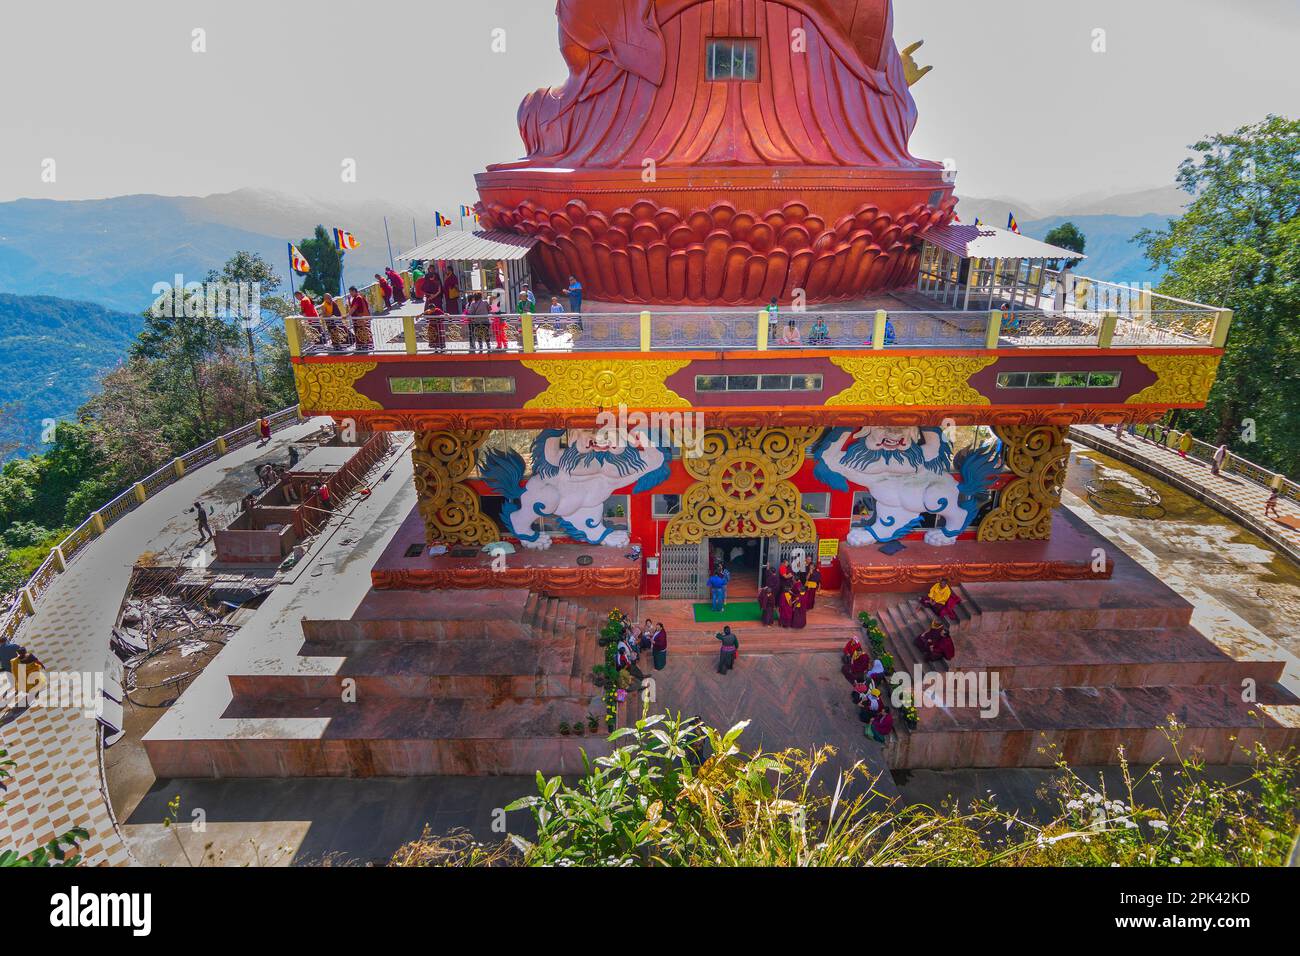 Vue arrière de la statue sainte de Guru Padmasambhava ou né d'un lotus, Guru Rinpoché, était un maître bouddhiste indien tantrique Vajra. Sikkim, Inde. Banque D'Images